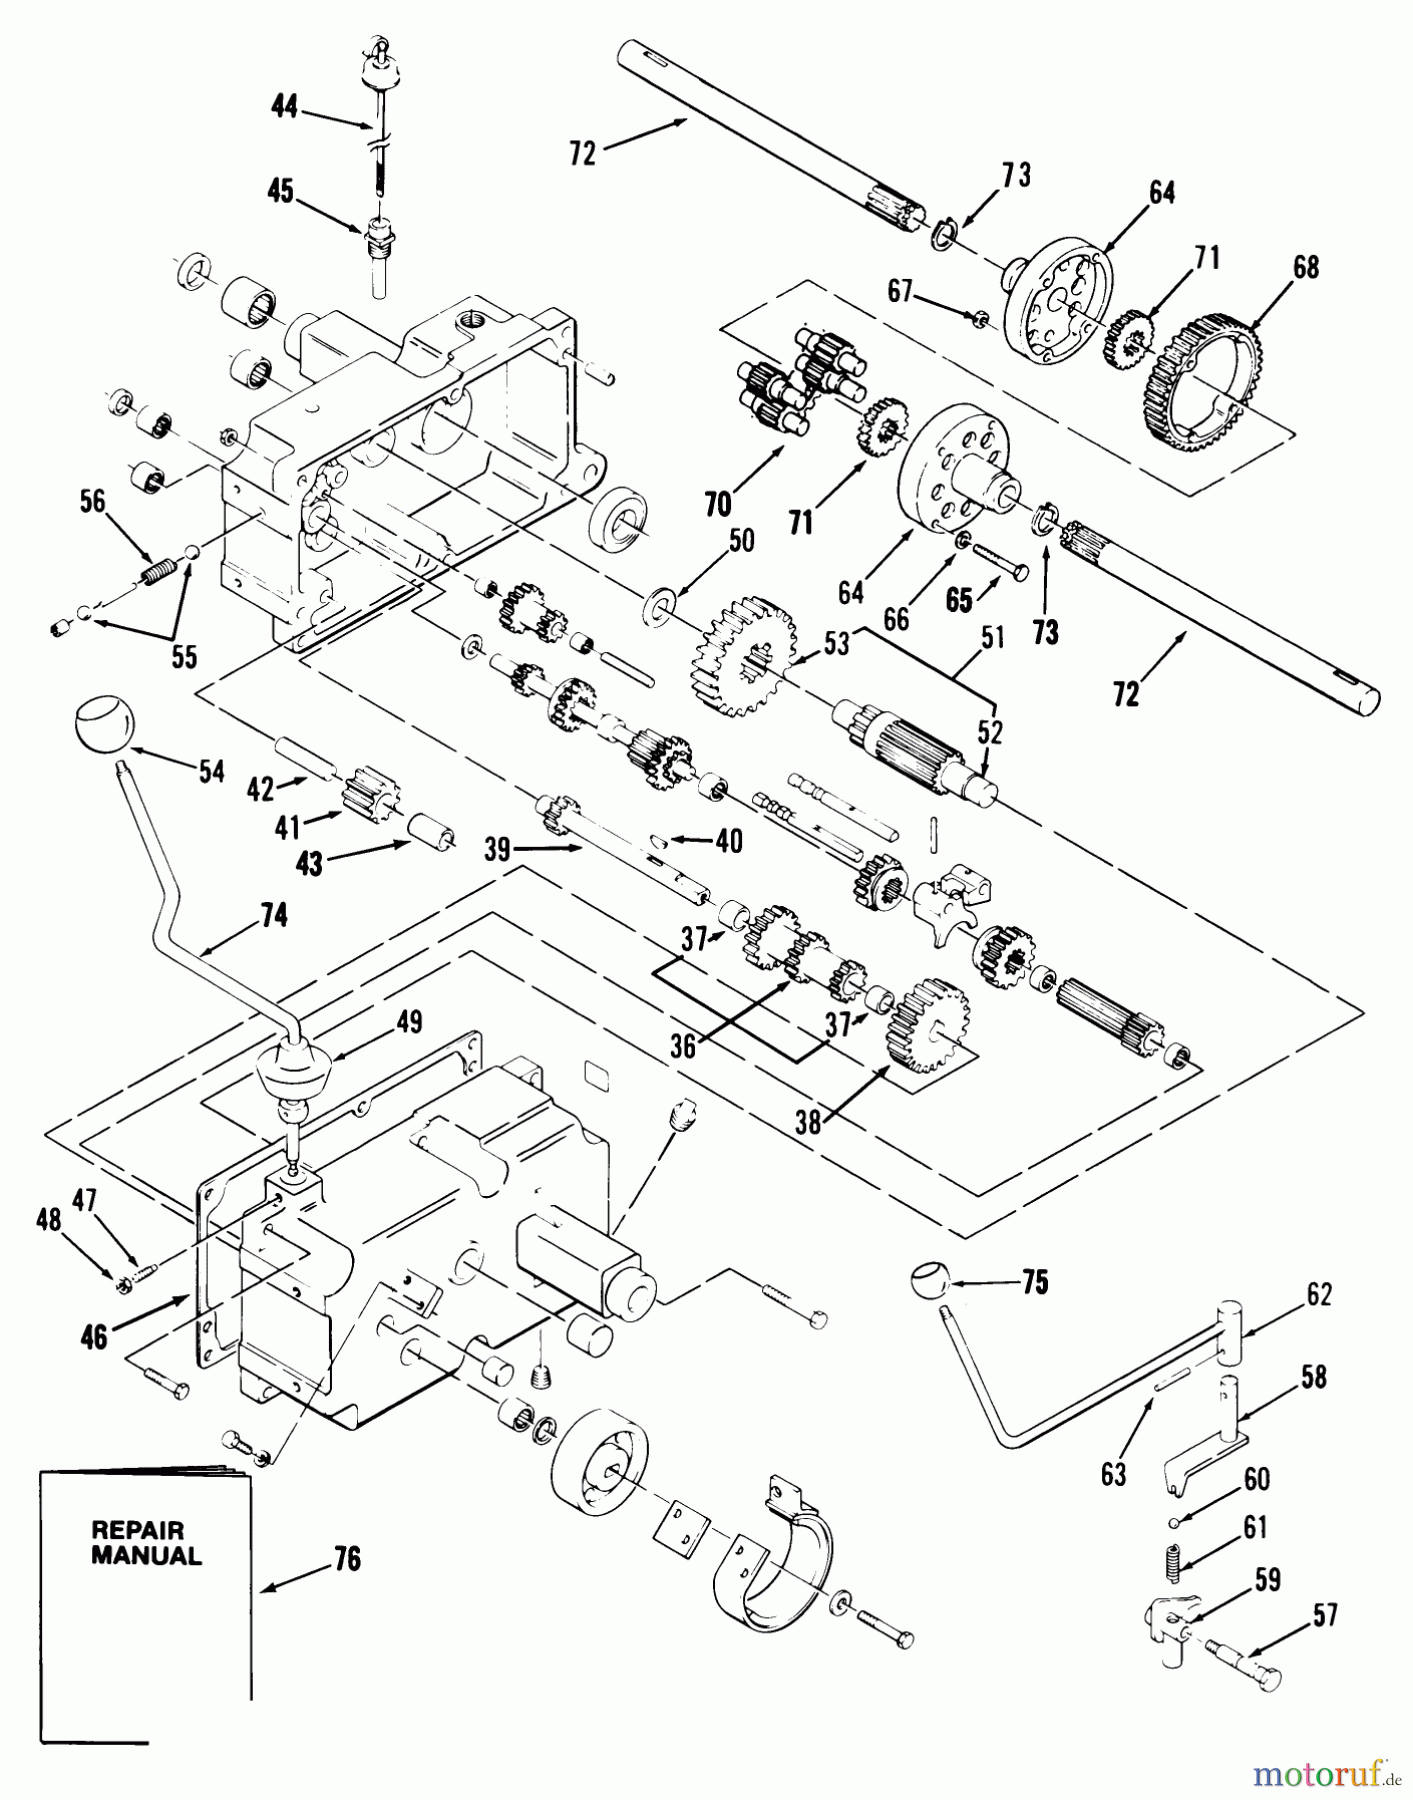  Toro Neu Mowers, Lawn & Garden Tractor Seite 1 31-14K804 (414-8) - Toro 414-8 Garden Tractor, 1989 MECHANICAL TRANSMISSION 8-SPEED #2